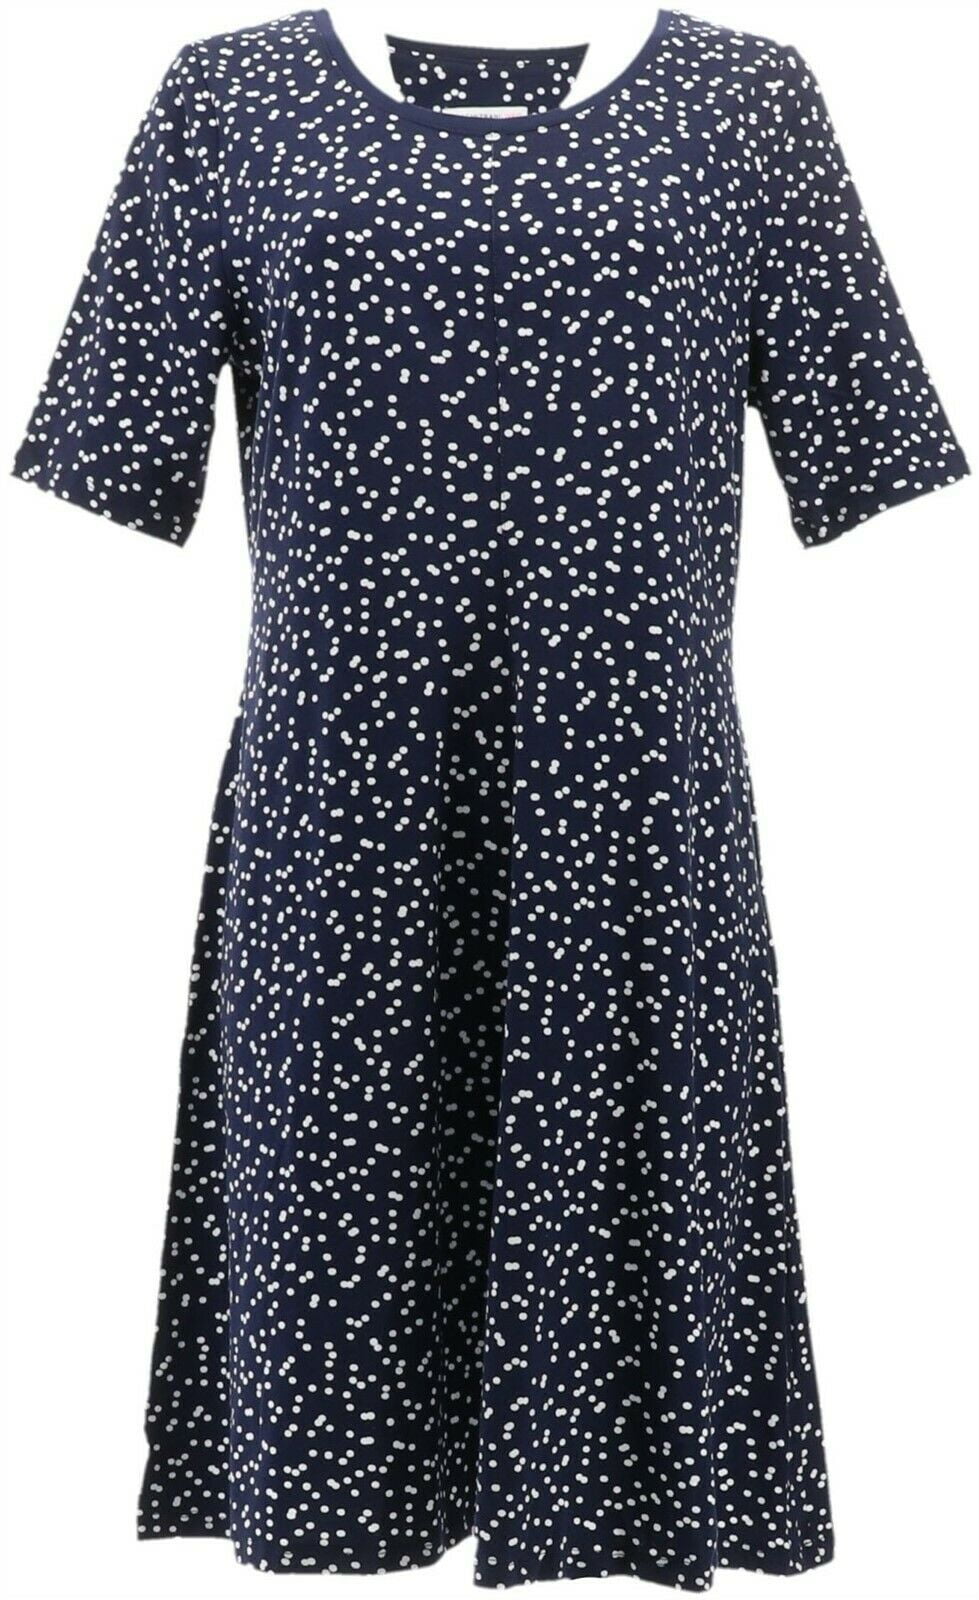 Isaac Mizrahi Knit Scatter Dot Swing Dress Women's A352282 - Walmart ...